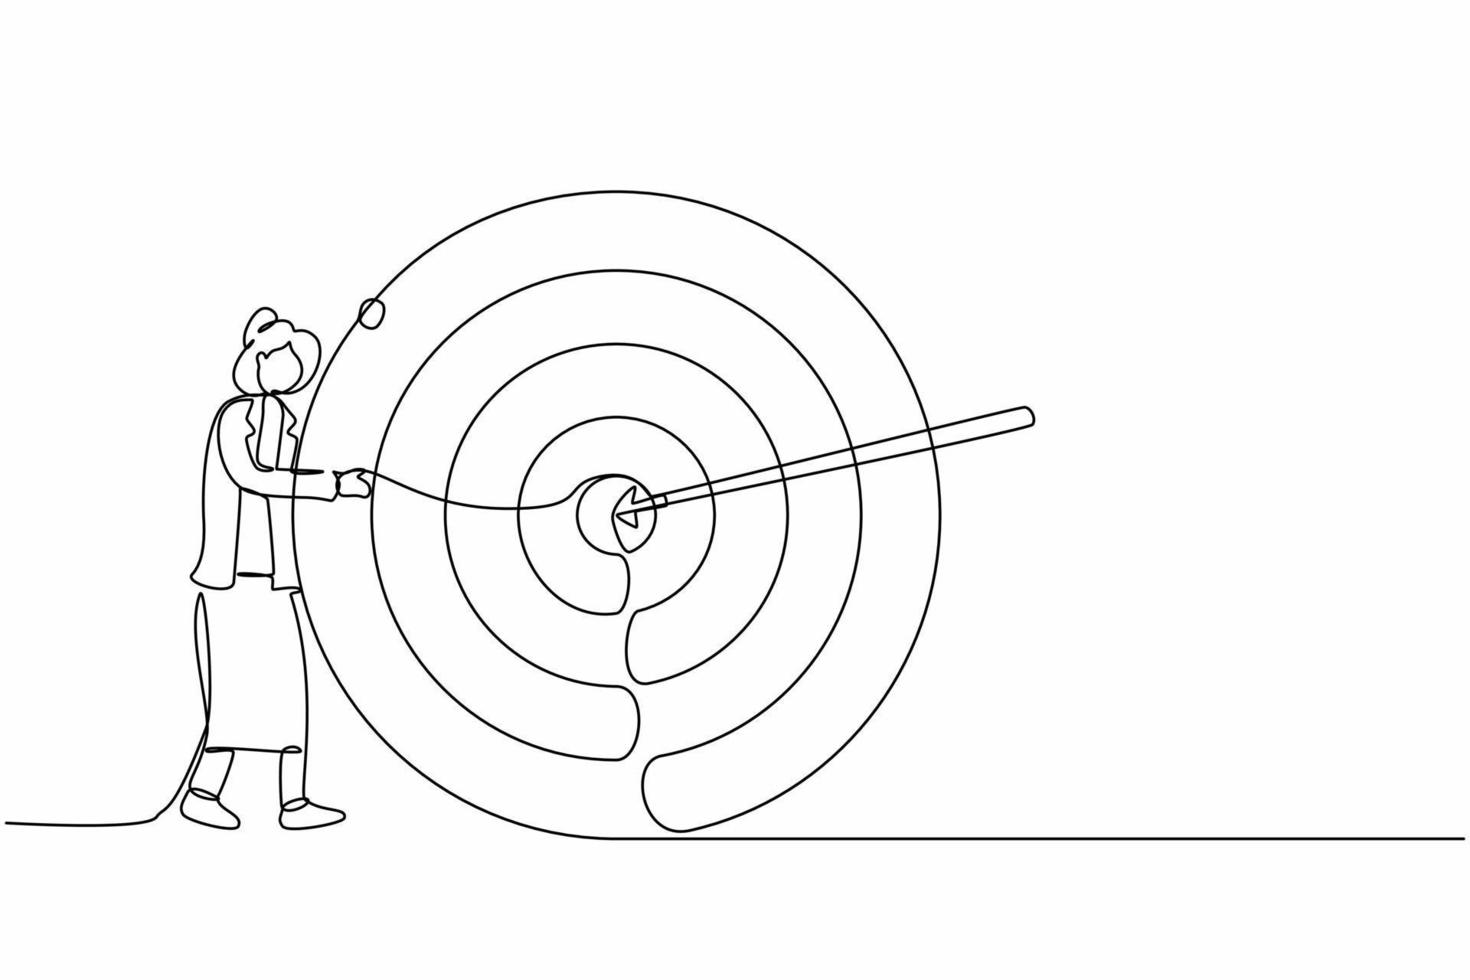 una sola línea continua dibujando una mujer de negocios abraza y se para al lado del círculo del objetivo, flecha que golpea el objetivo justo en el medio, analiza el resultado del logro dentro de la empresa. vector de diseño de dibujo de una línea